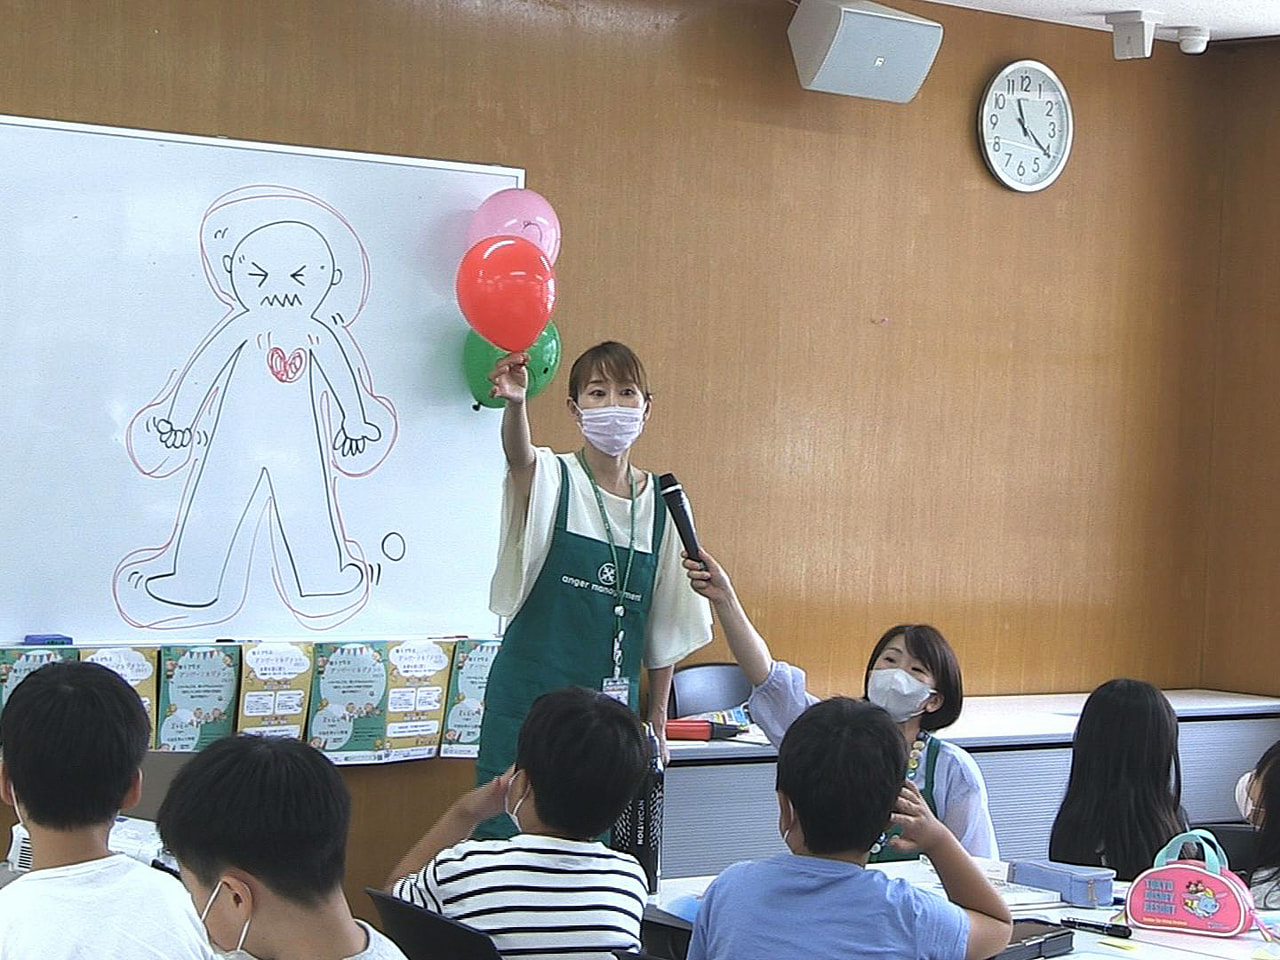 怒りの感情と上手に付き合う方法を親子で学ぶ教室が６日、関市で開かれました。 この...